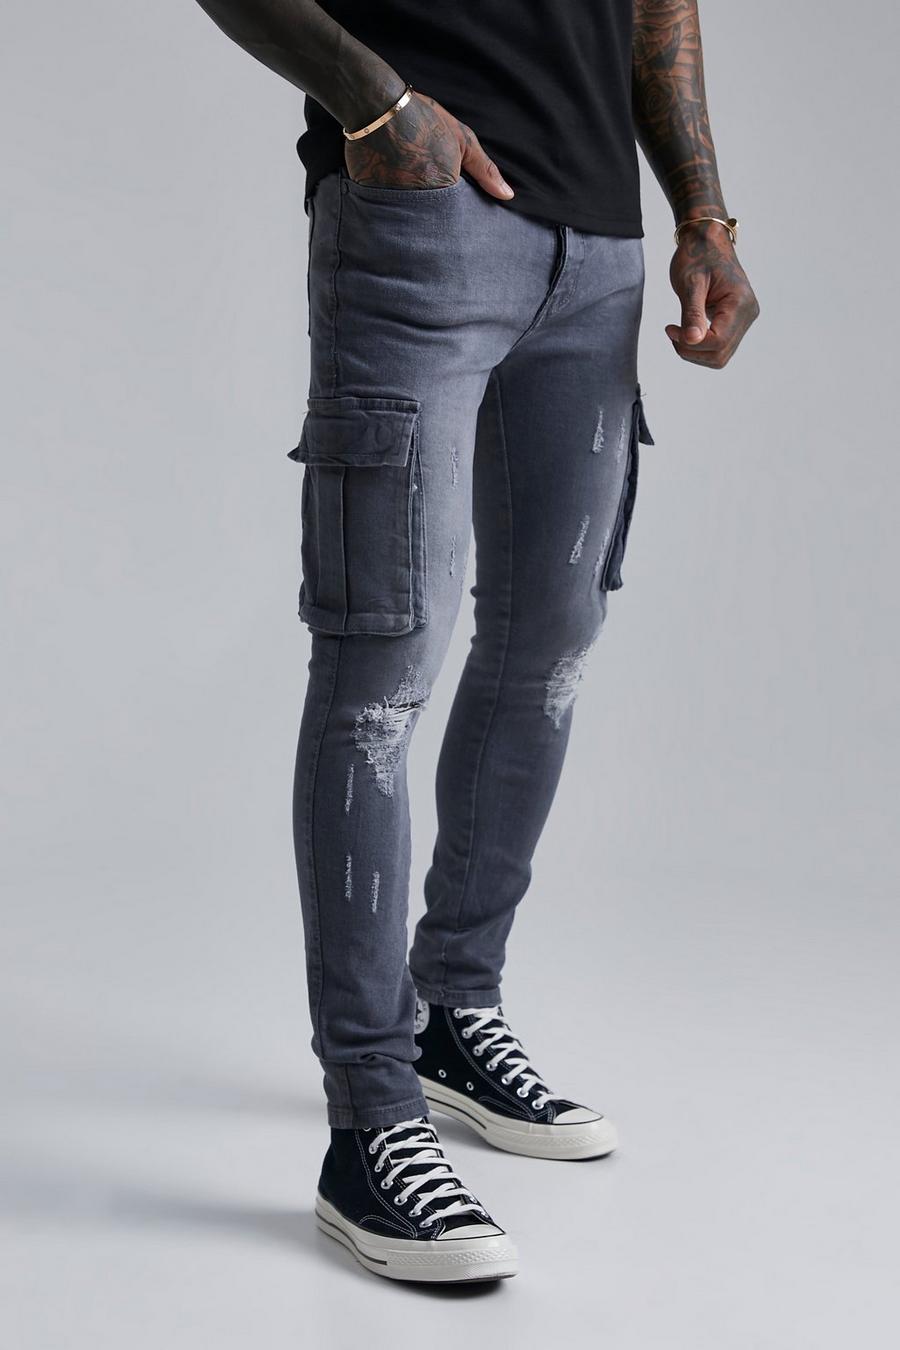 Jeans Cargo Super Skinny Fit con strappi sul ginocchio, Dark grey grigio